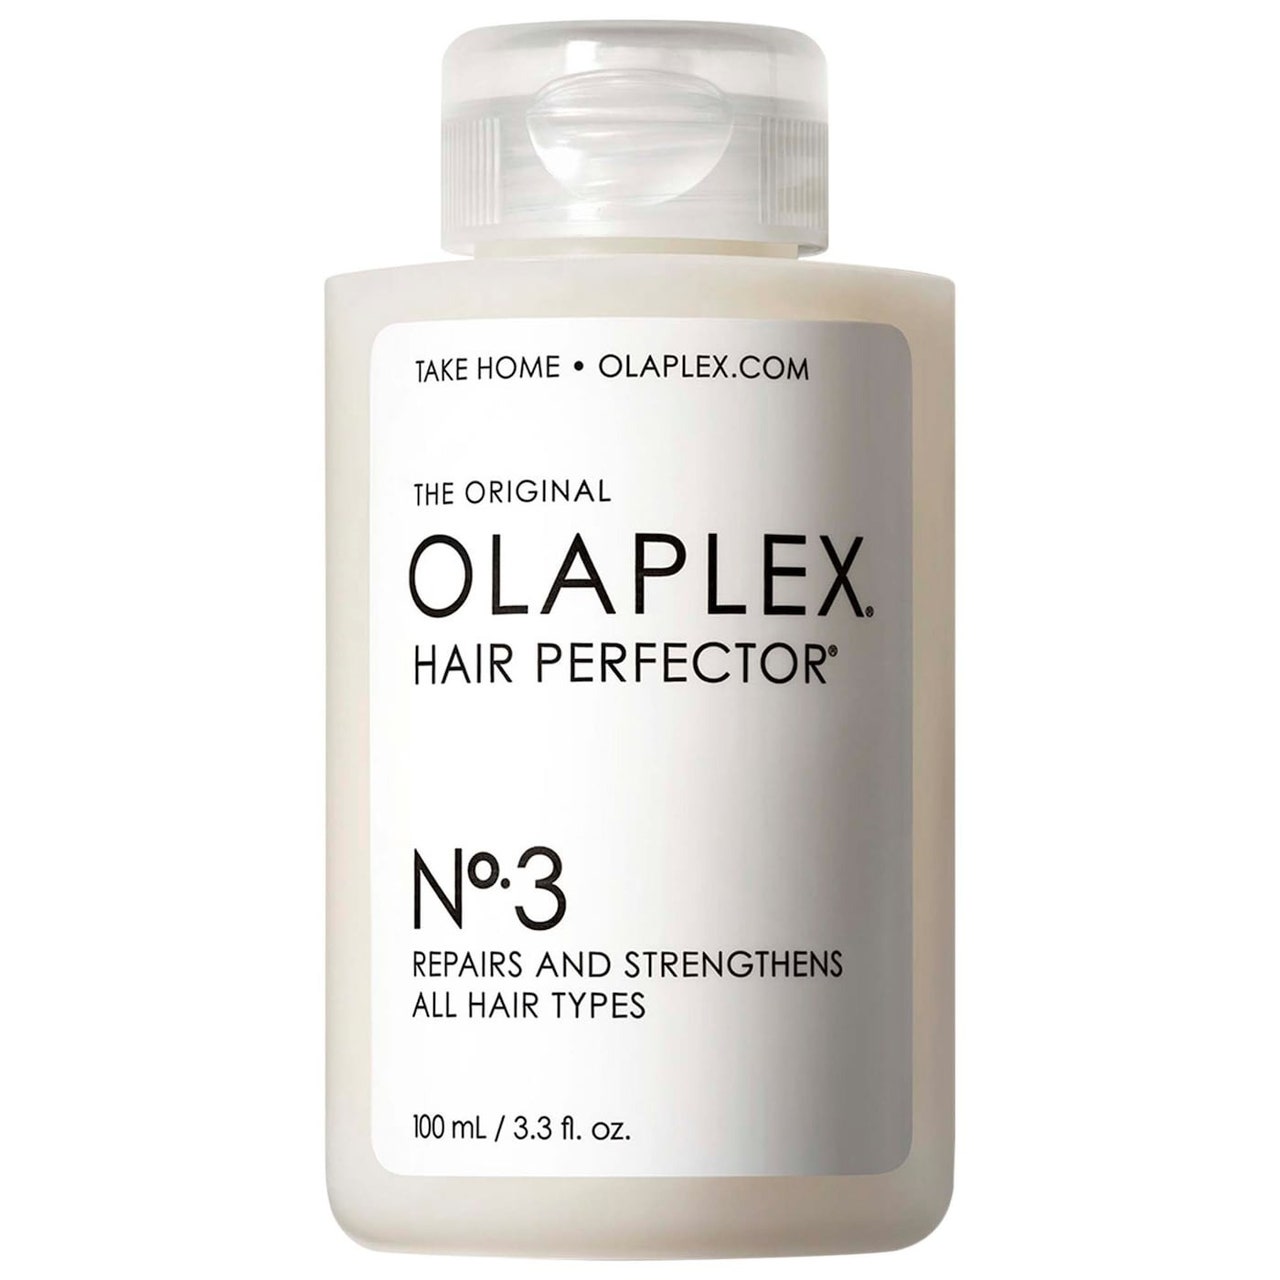 Olaplex Hair Perfector Nr. 3 weiße Flasche auf weißem Hintergrund